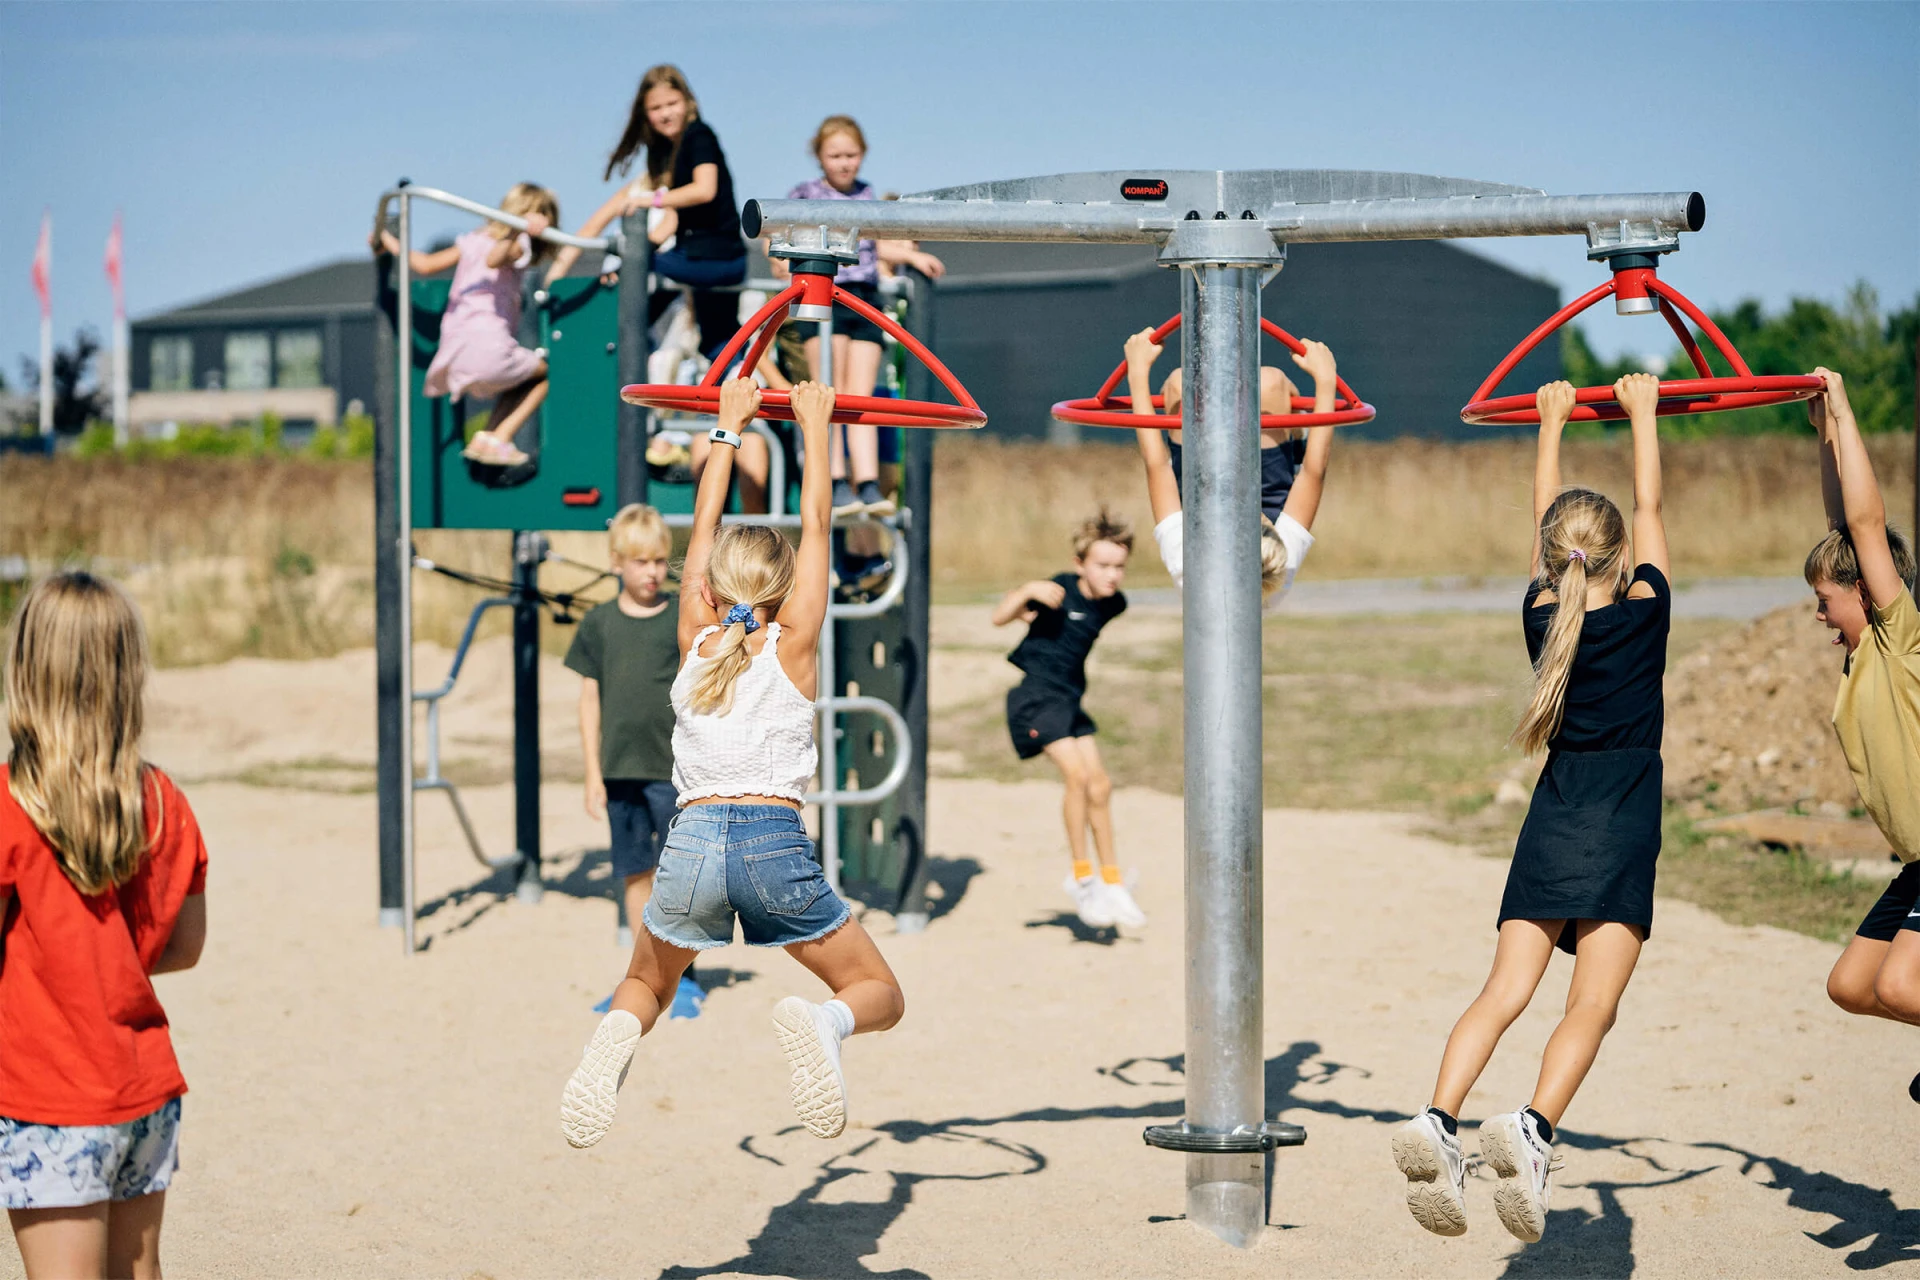 Children spinning on playground equipment in a schoolyard